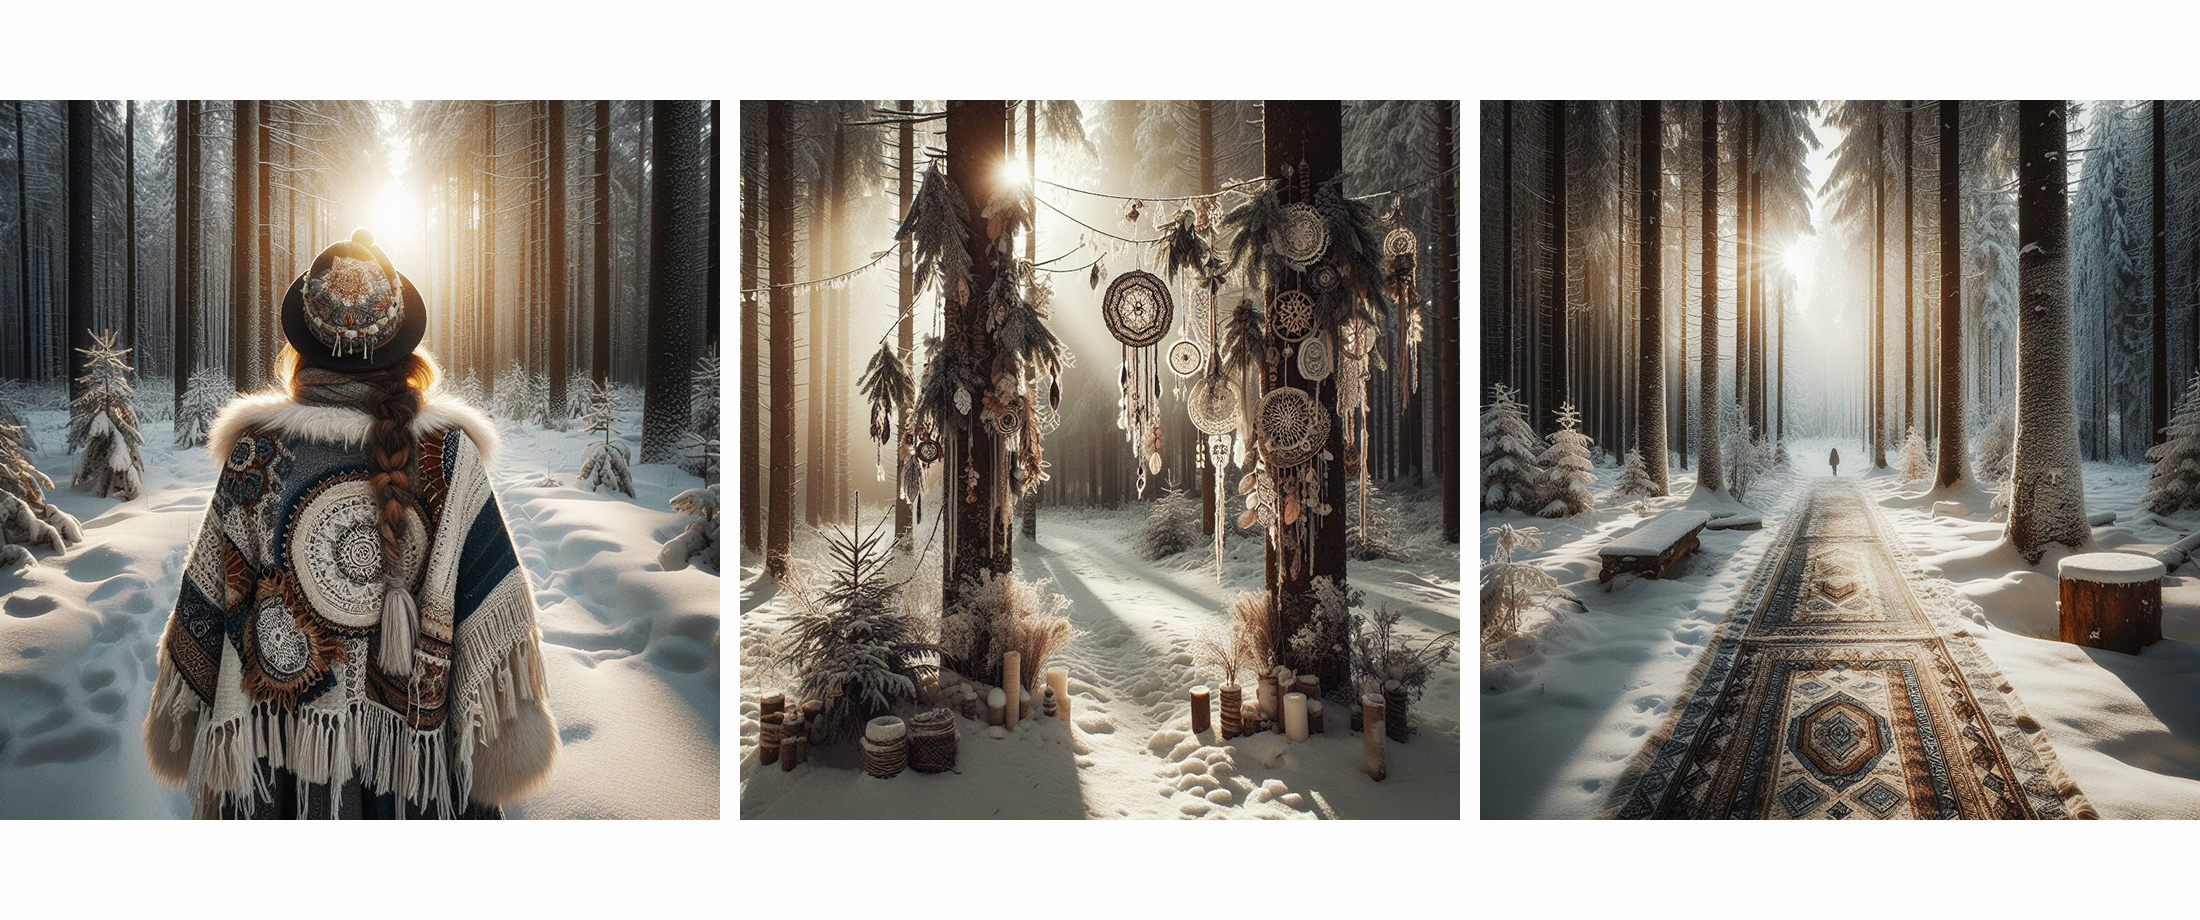 Ein magischer Winterwald